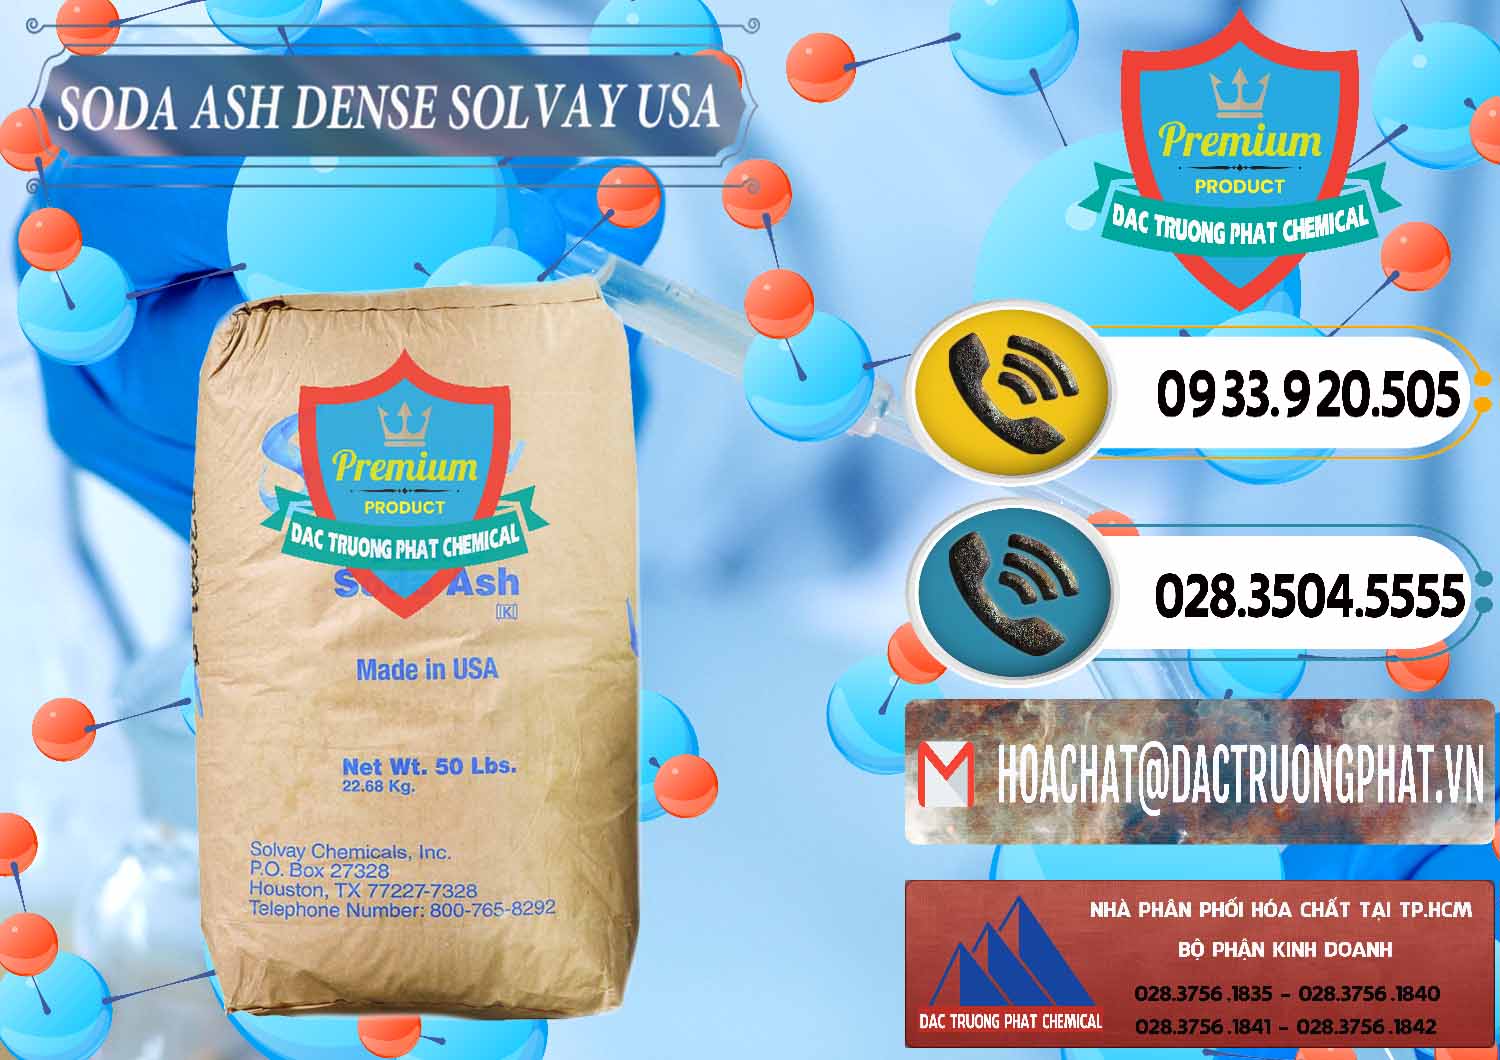 Nơi phân phối _ bán Soda Ash Dense - NA2CO3 Solvay Mỹ USA - 0337 - Cung cấp & bán hóa chất tại TP.HCM - hoachatdetnhuom.vn